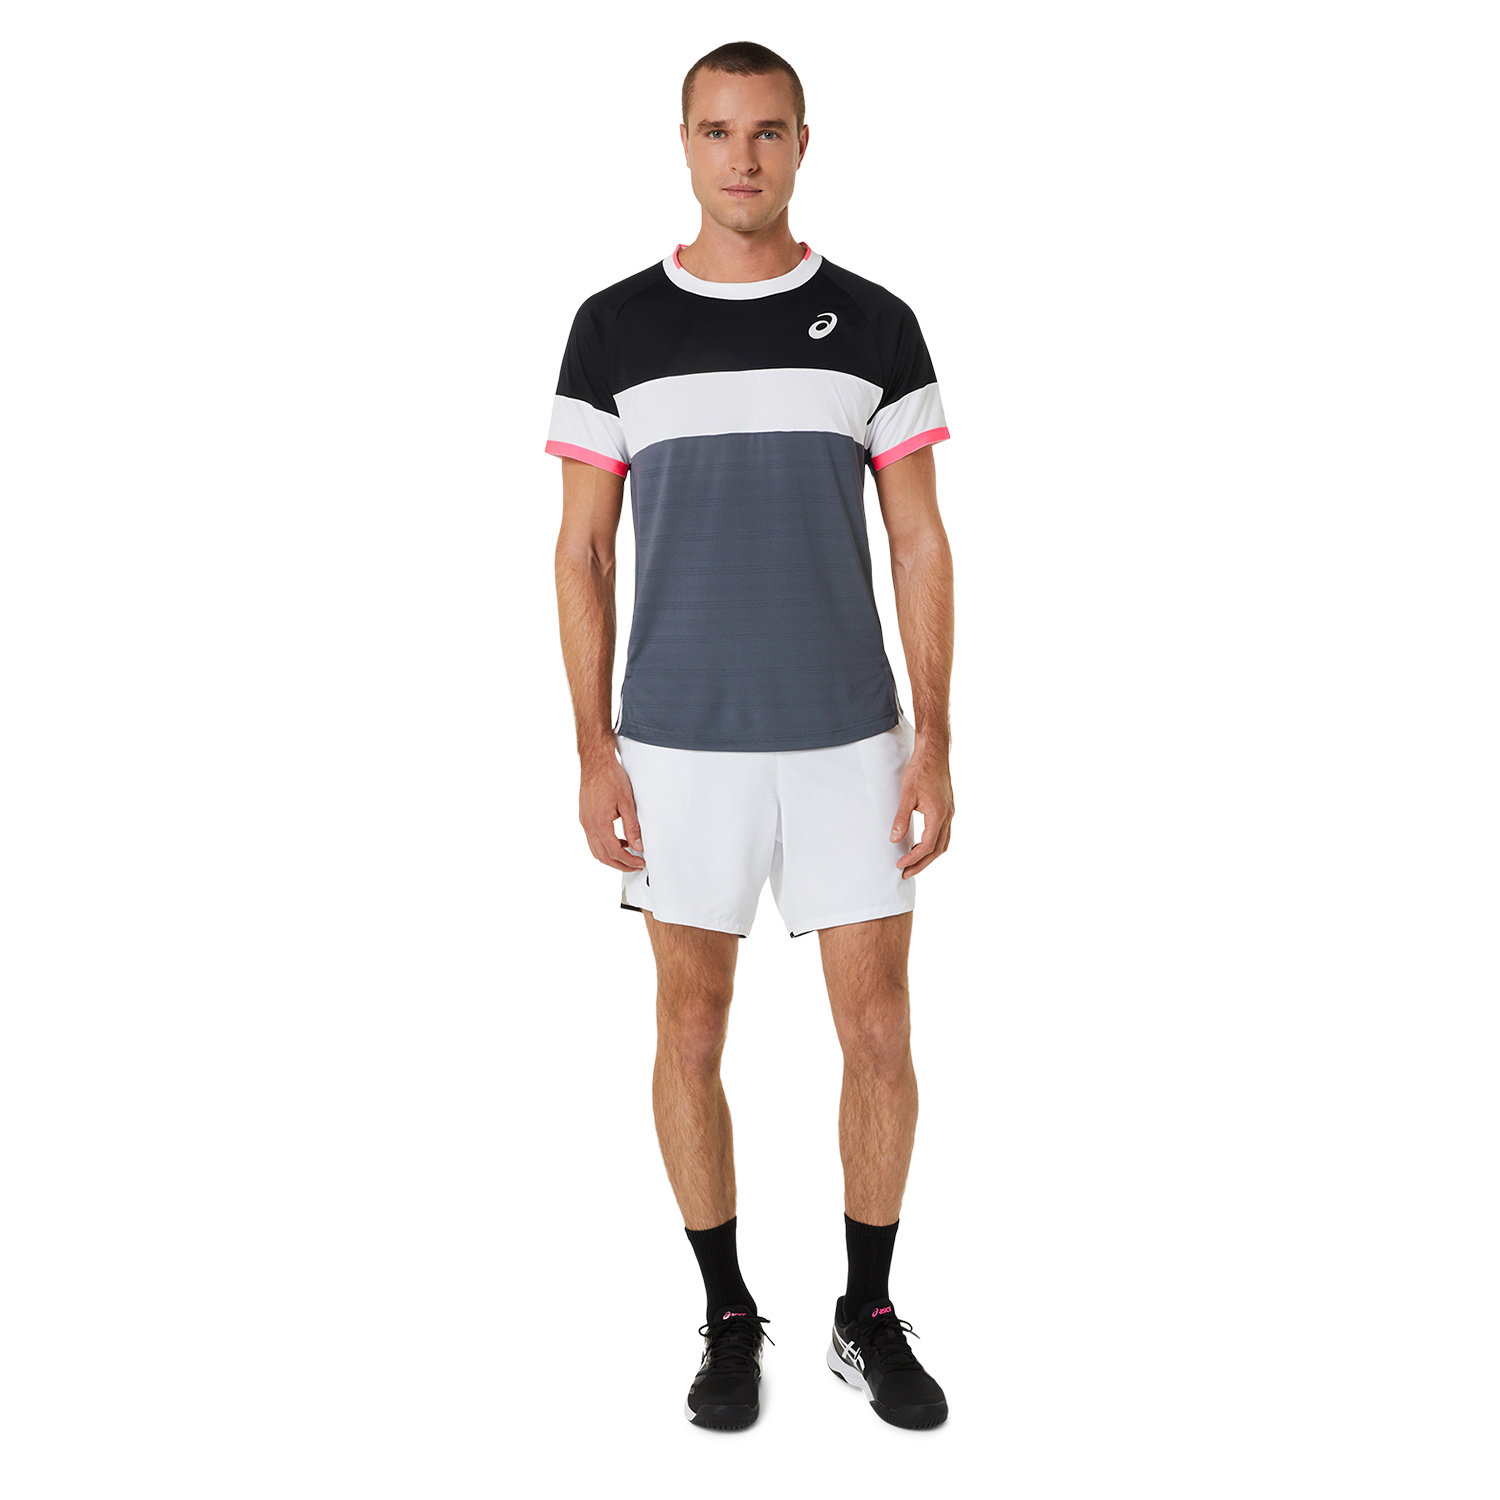 Asics Match T-Shirt - Performance Black/Carrier Grey